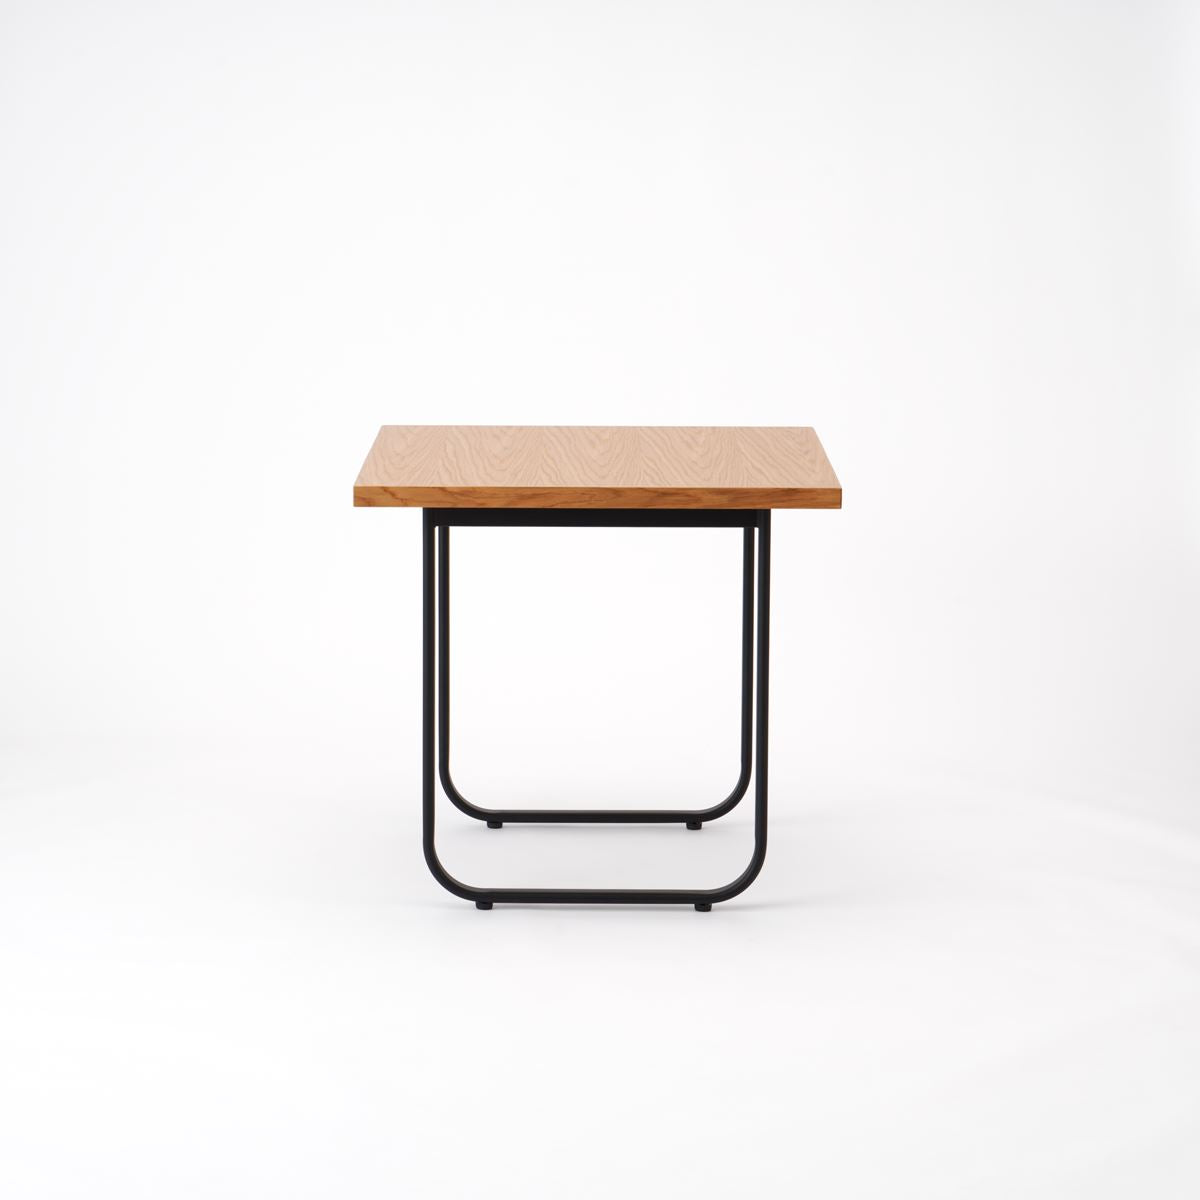 KUUM  Table W800 × D800 - オーク突板ナチュラル / クーム テーブル